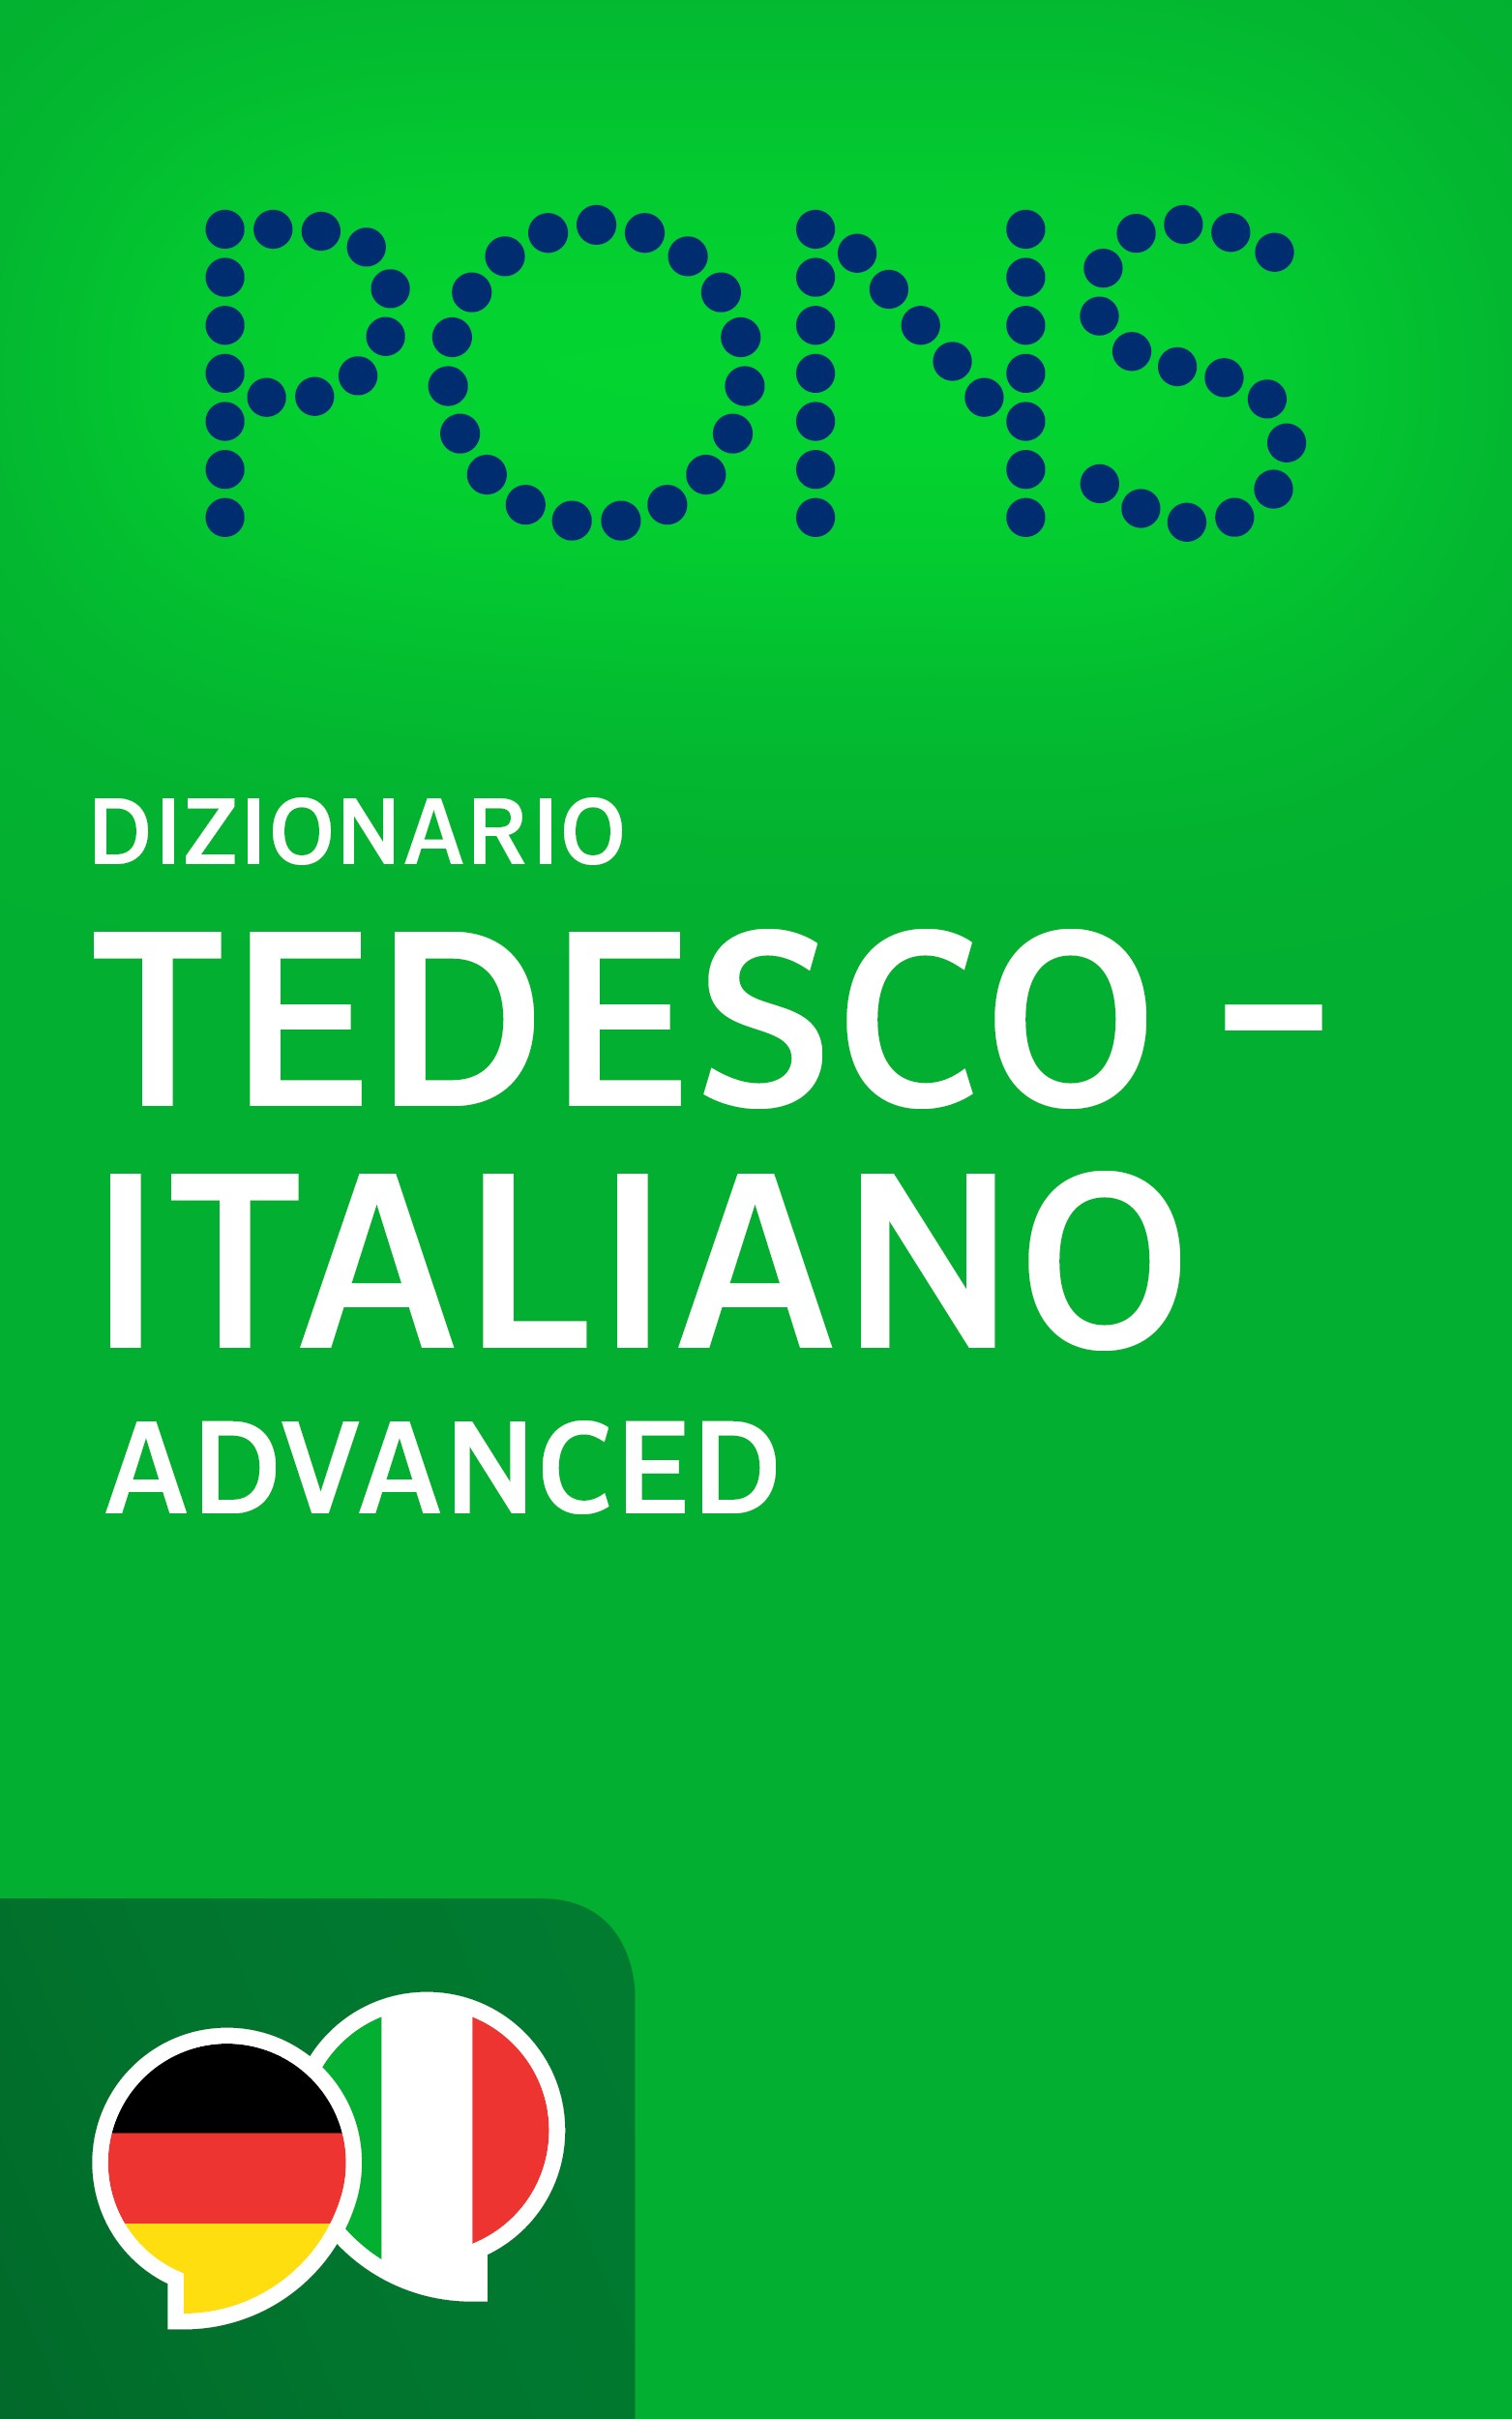 E-Book: PONS Dizionario Tedesco -> Italiano ADVANCED